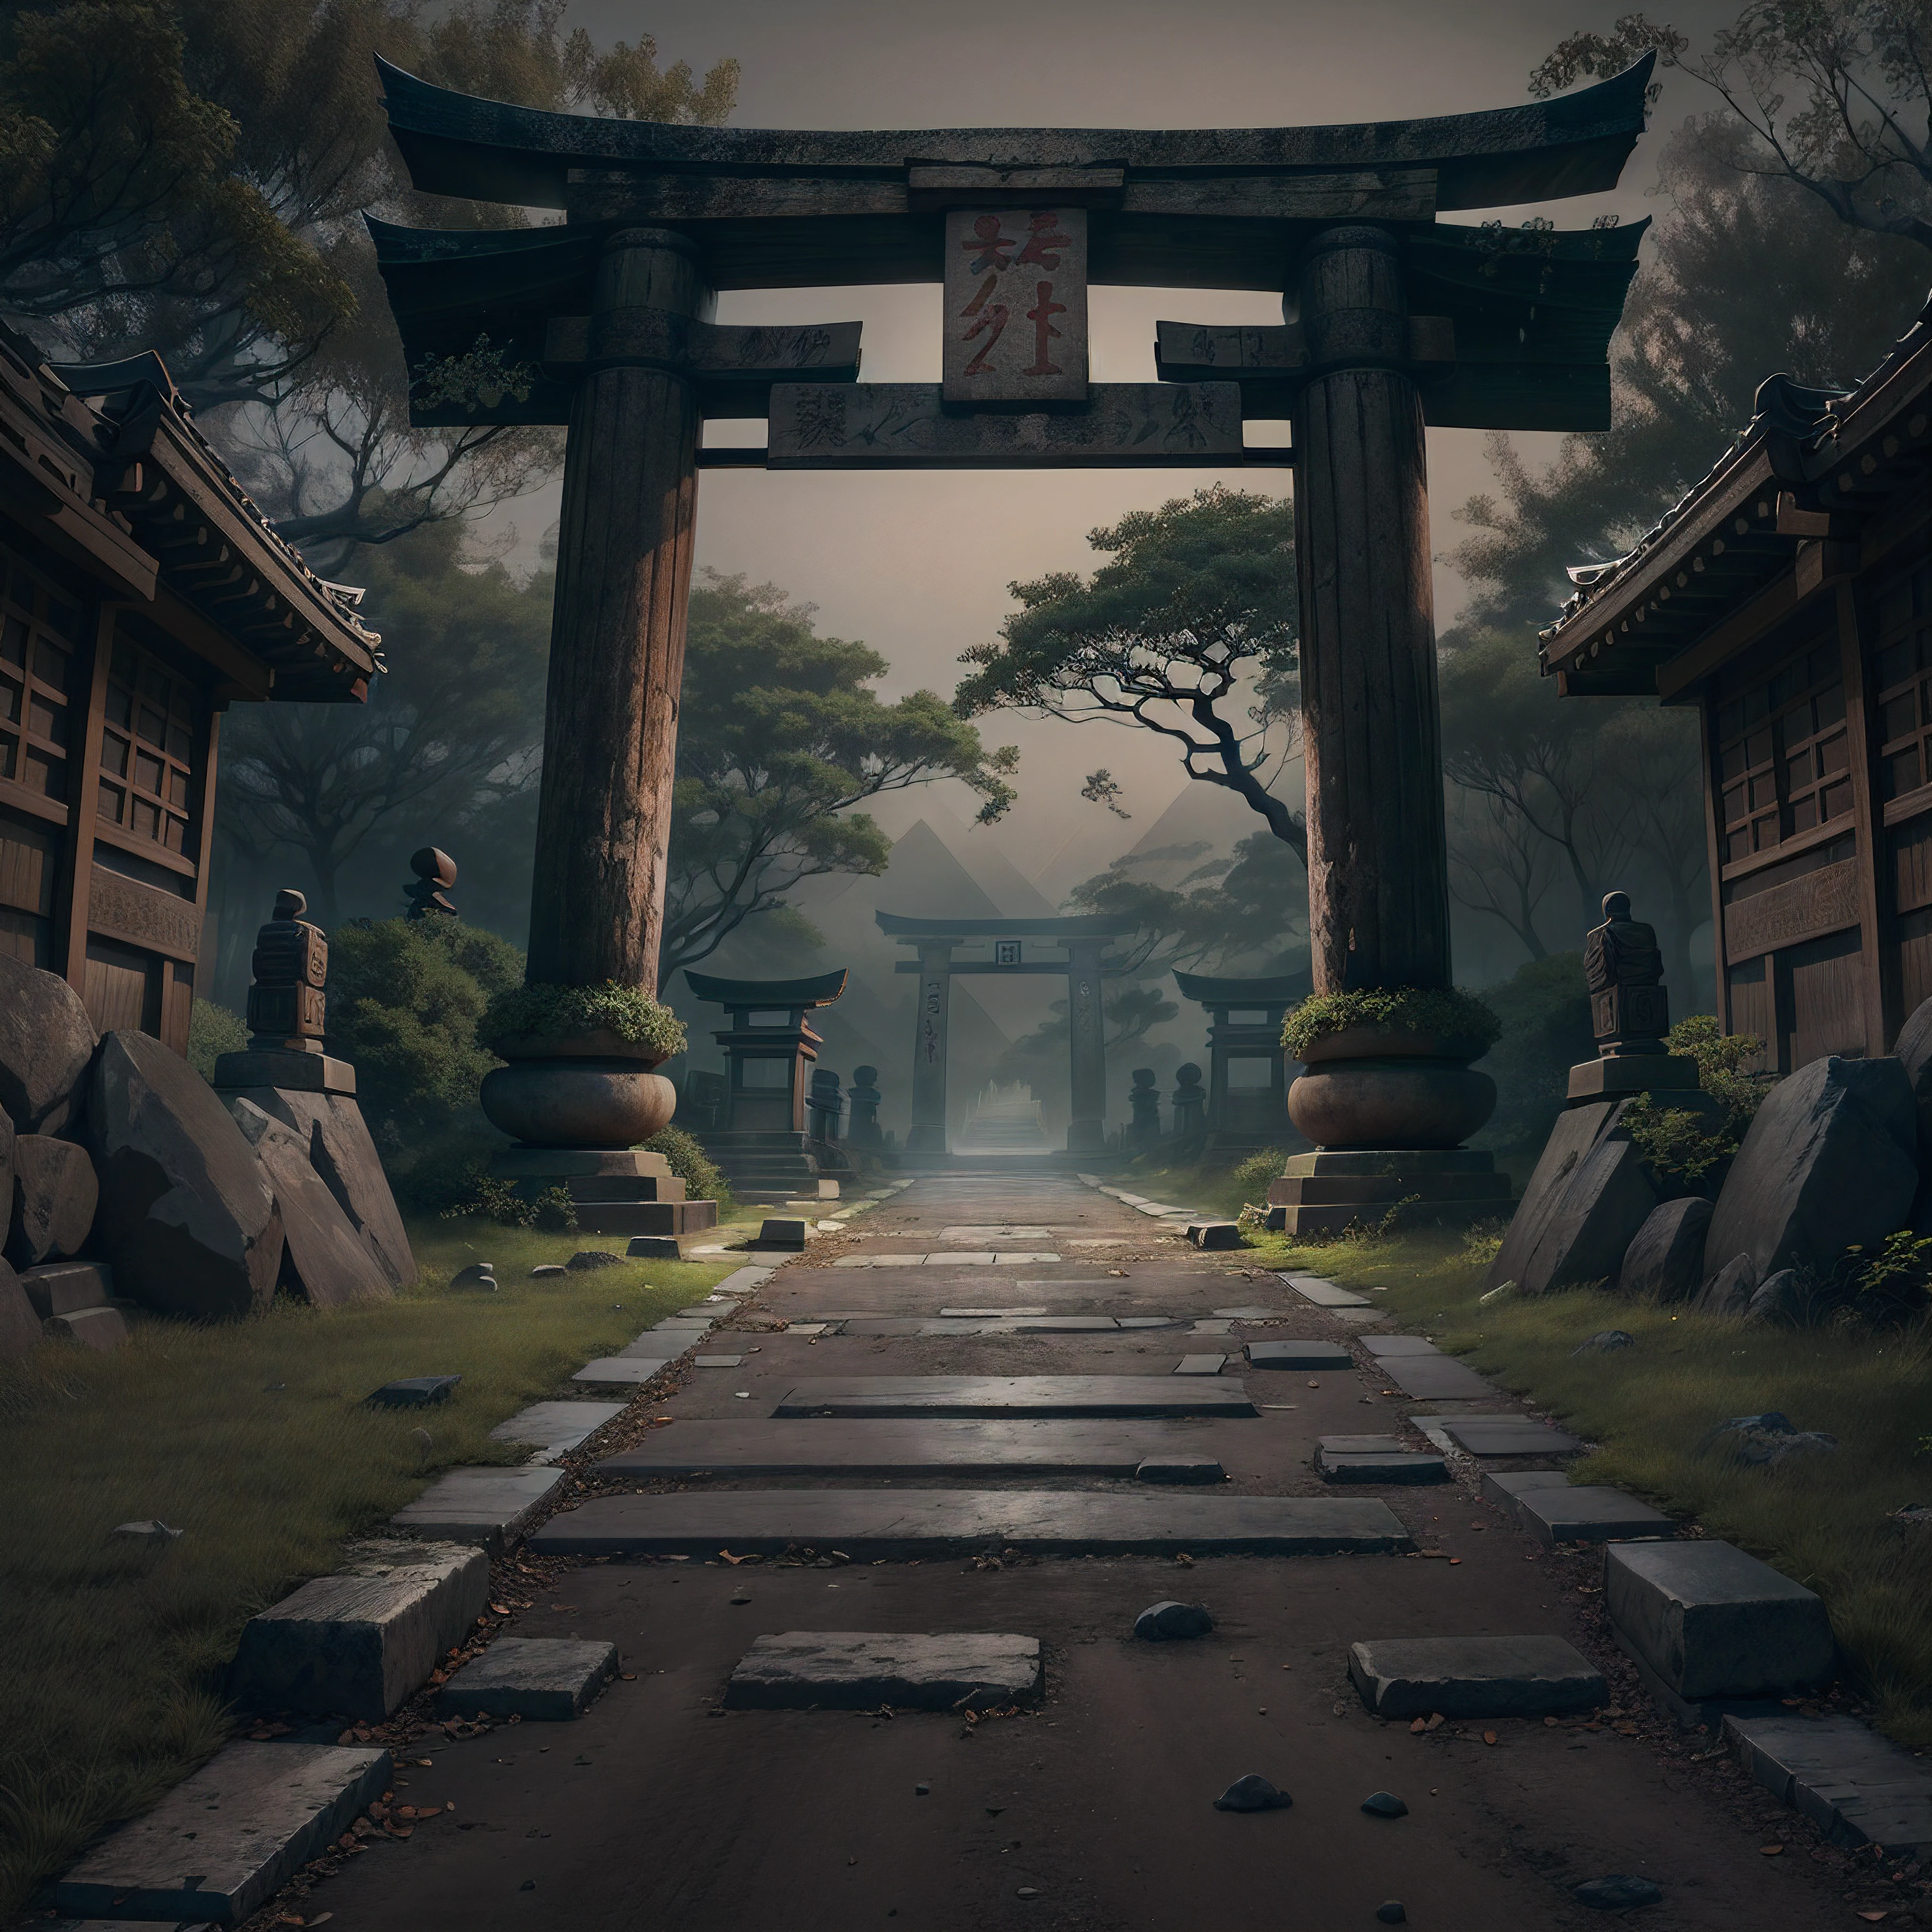 Erstellen Sie einen dunklen Pfad mit japanischen Elementen und platzieren Sie ein altes Torii-Tor am Anfang und am Ende im Hintergrund die Pyramiden von Gizeh